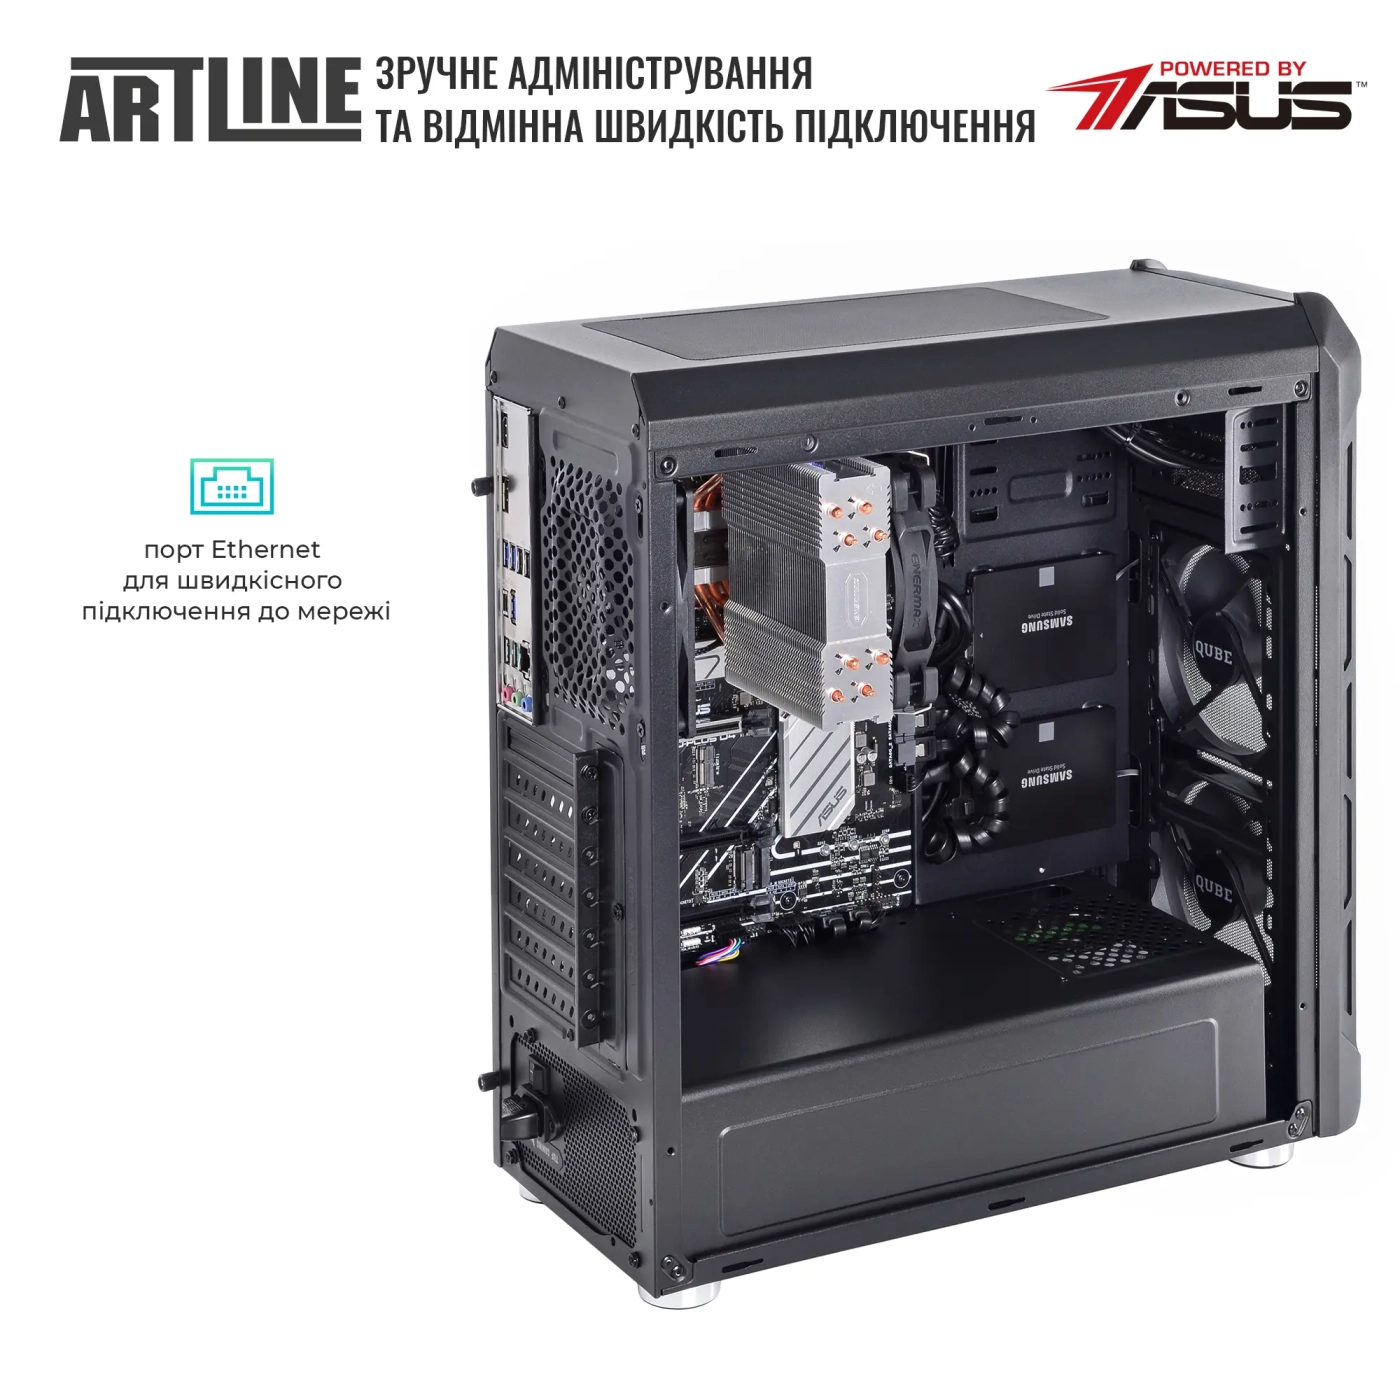 Купить Сервер ARTLINE Business T27 (T27v41) - фото 7